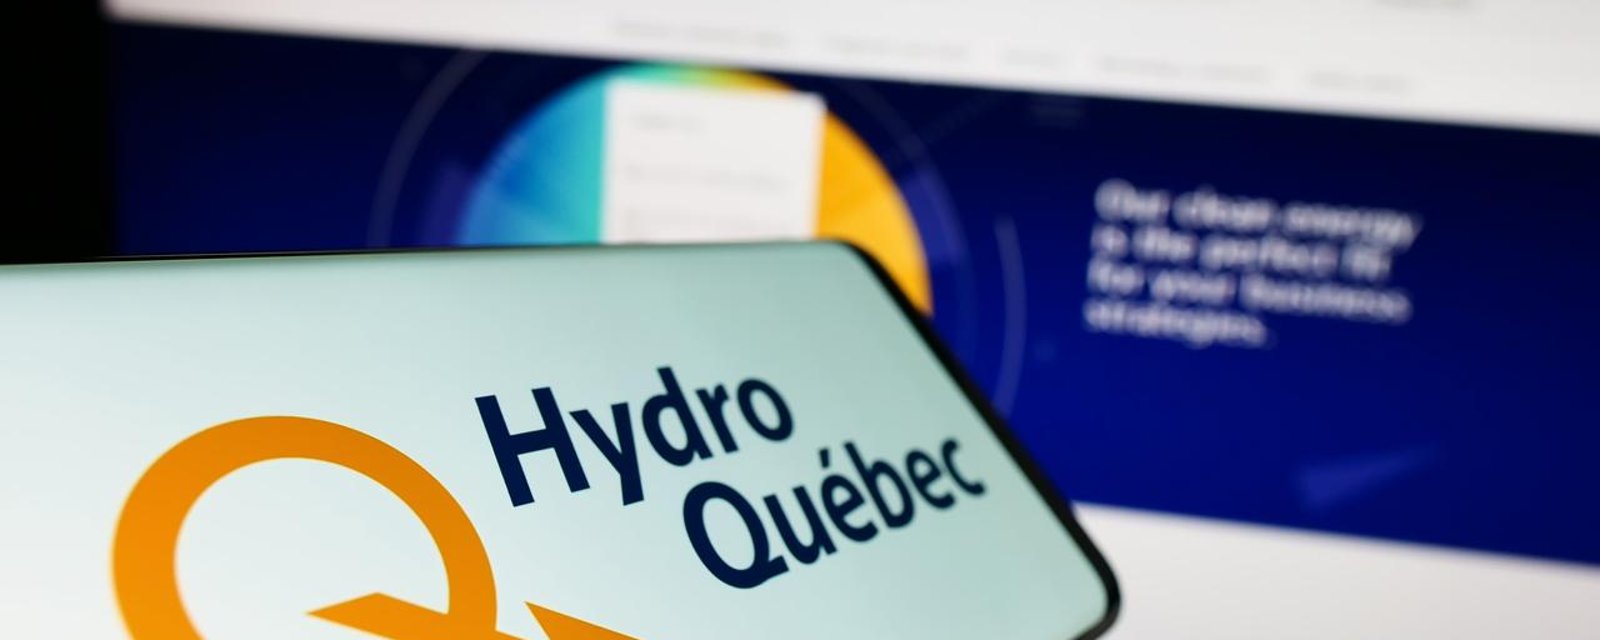 Une femme demande sur Twitter comment regarder les conférences d'Hydro-Québec sans électricité.